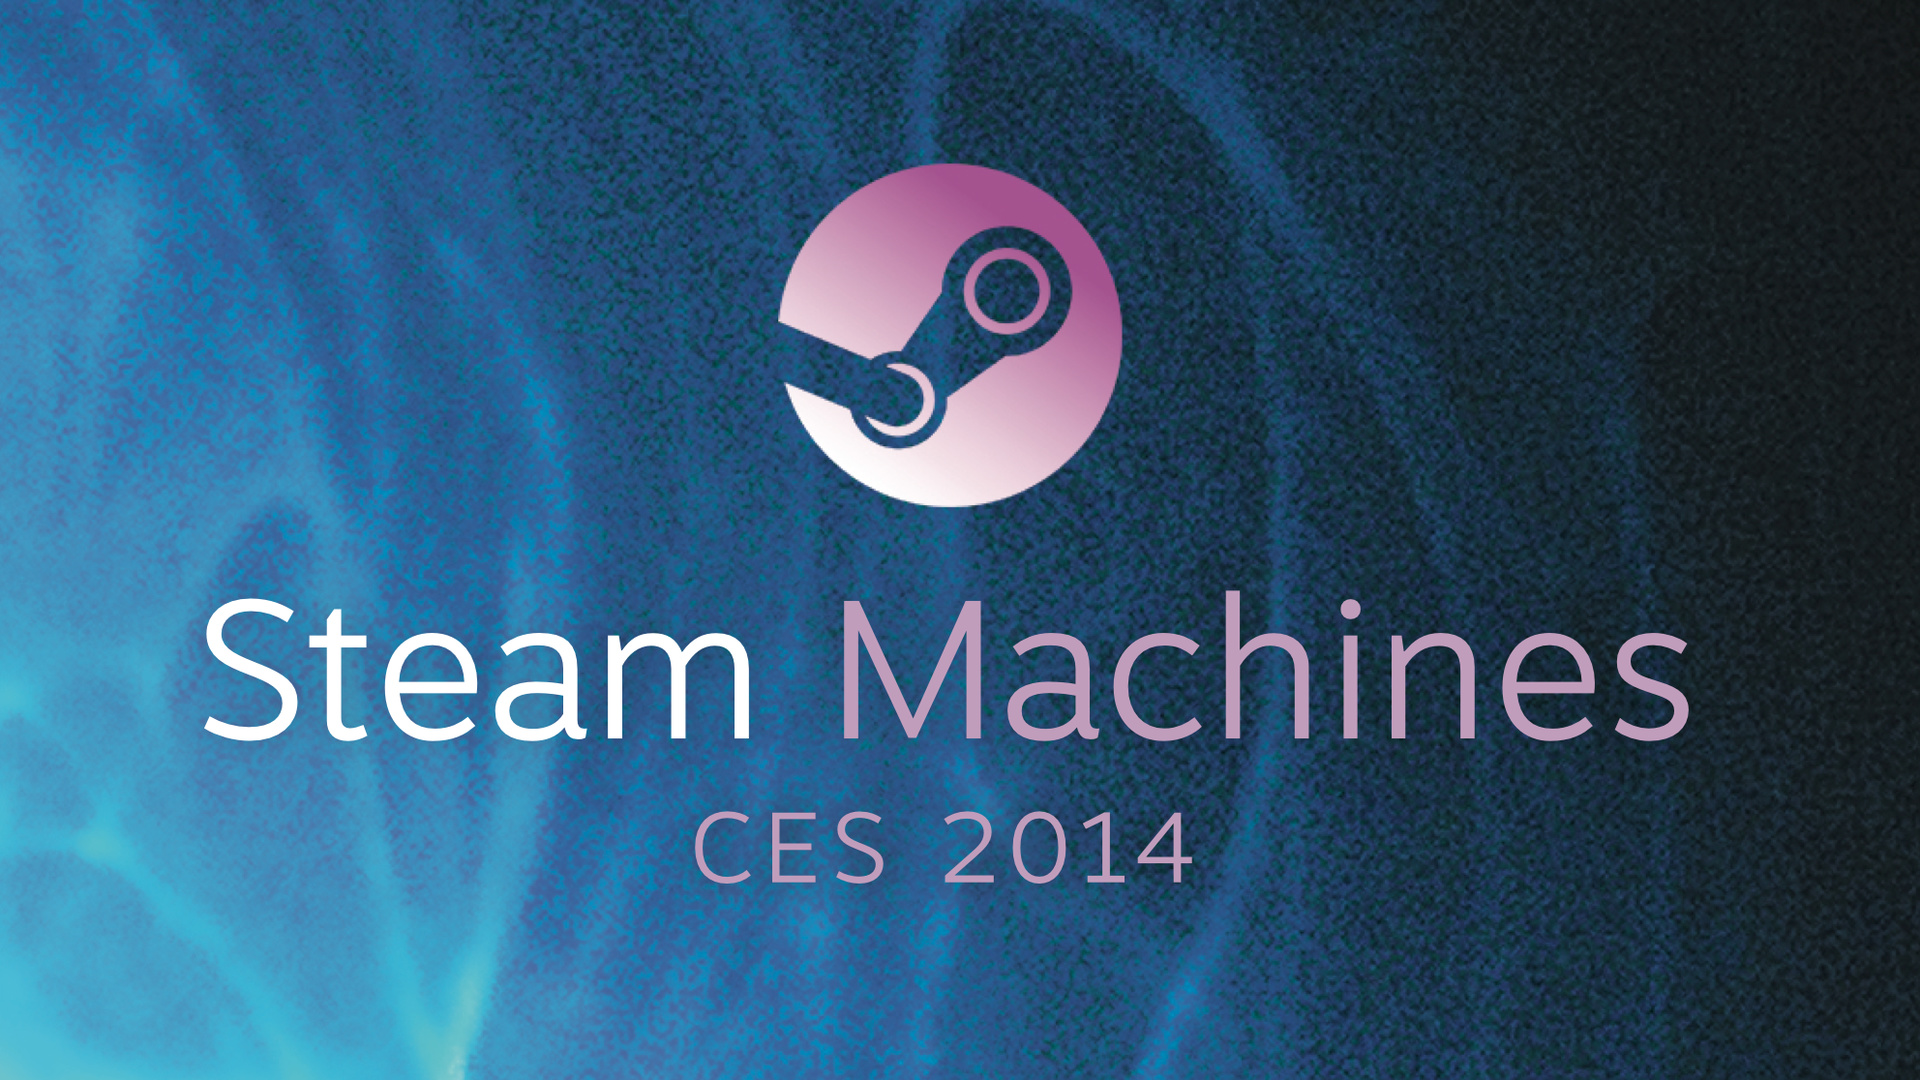 Valve präsentiert dreizehn Steam Machines zur CES 2014